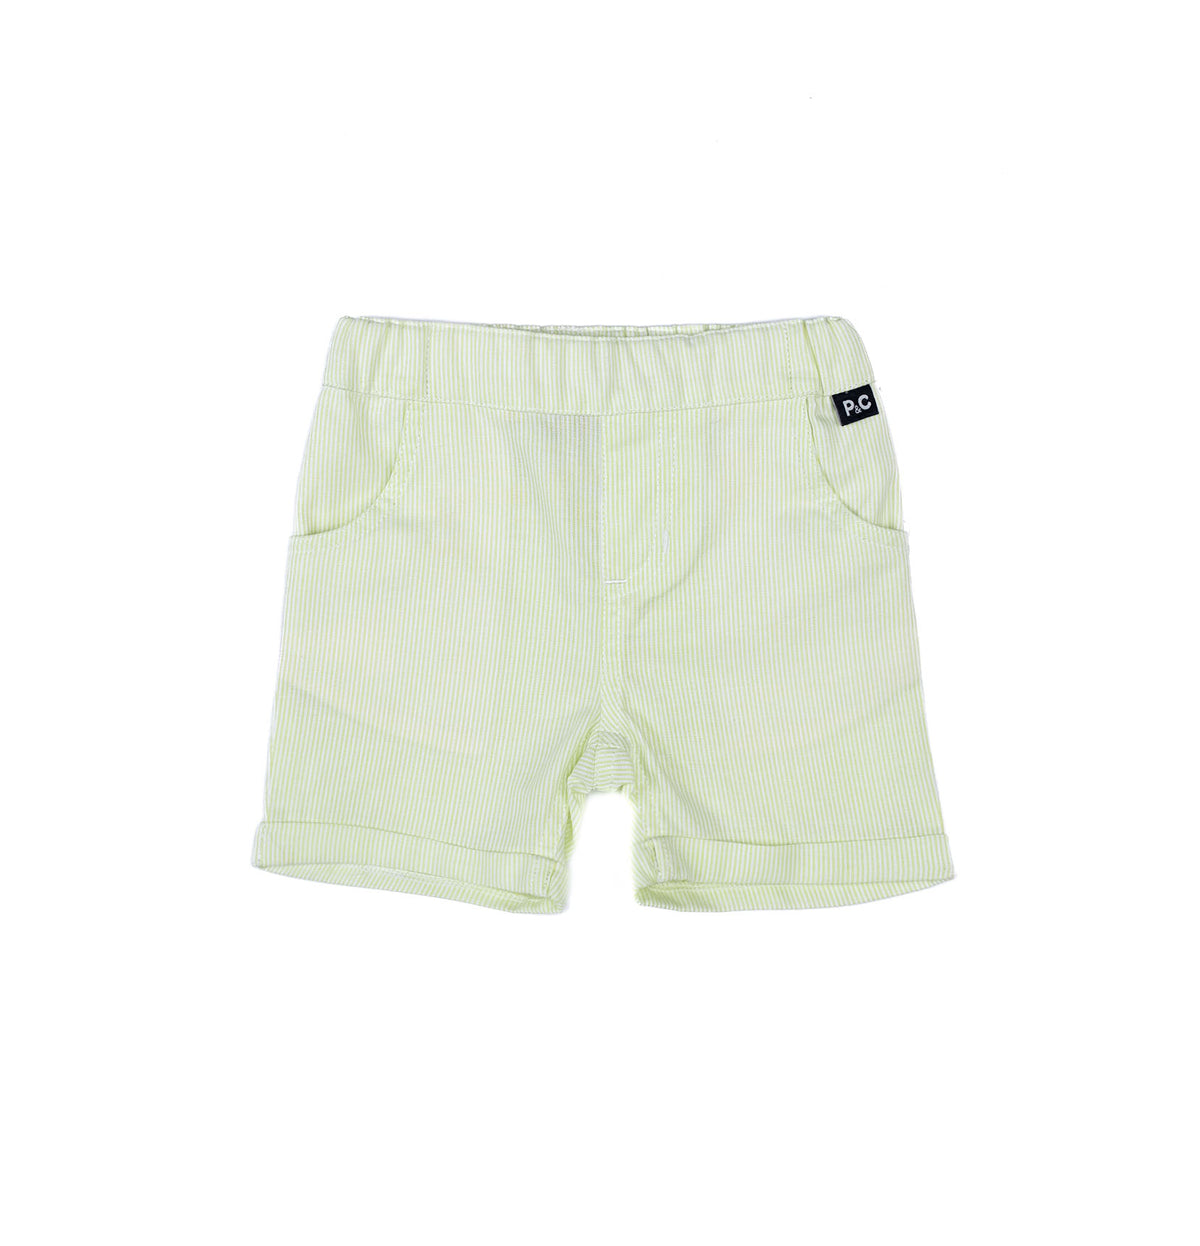 Fashionable Babyboy shorts by Pompelo